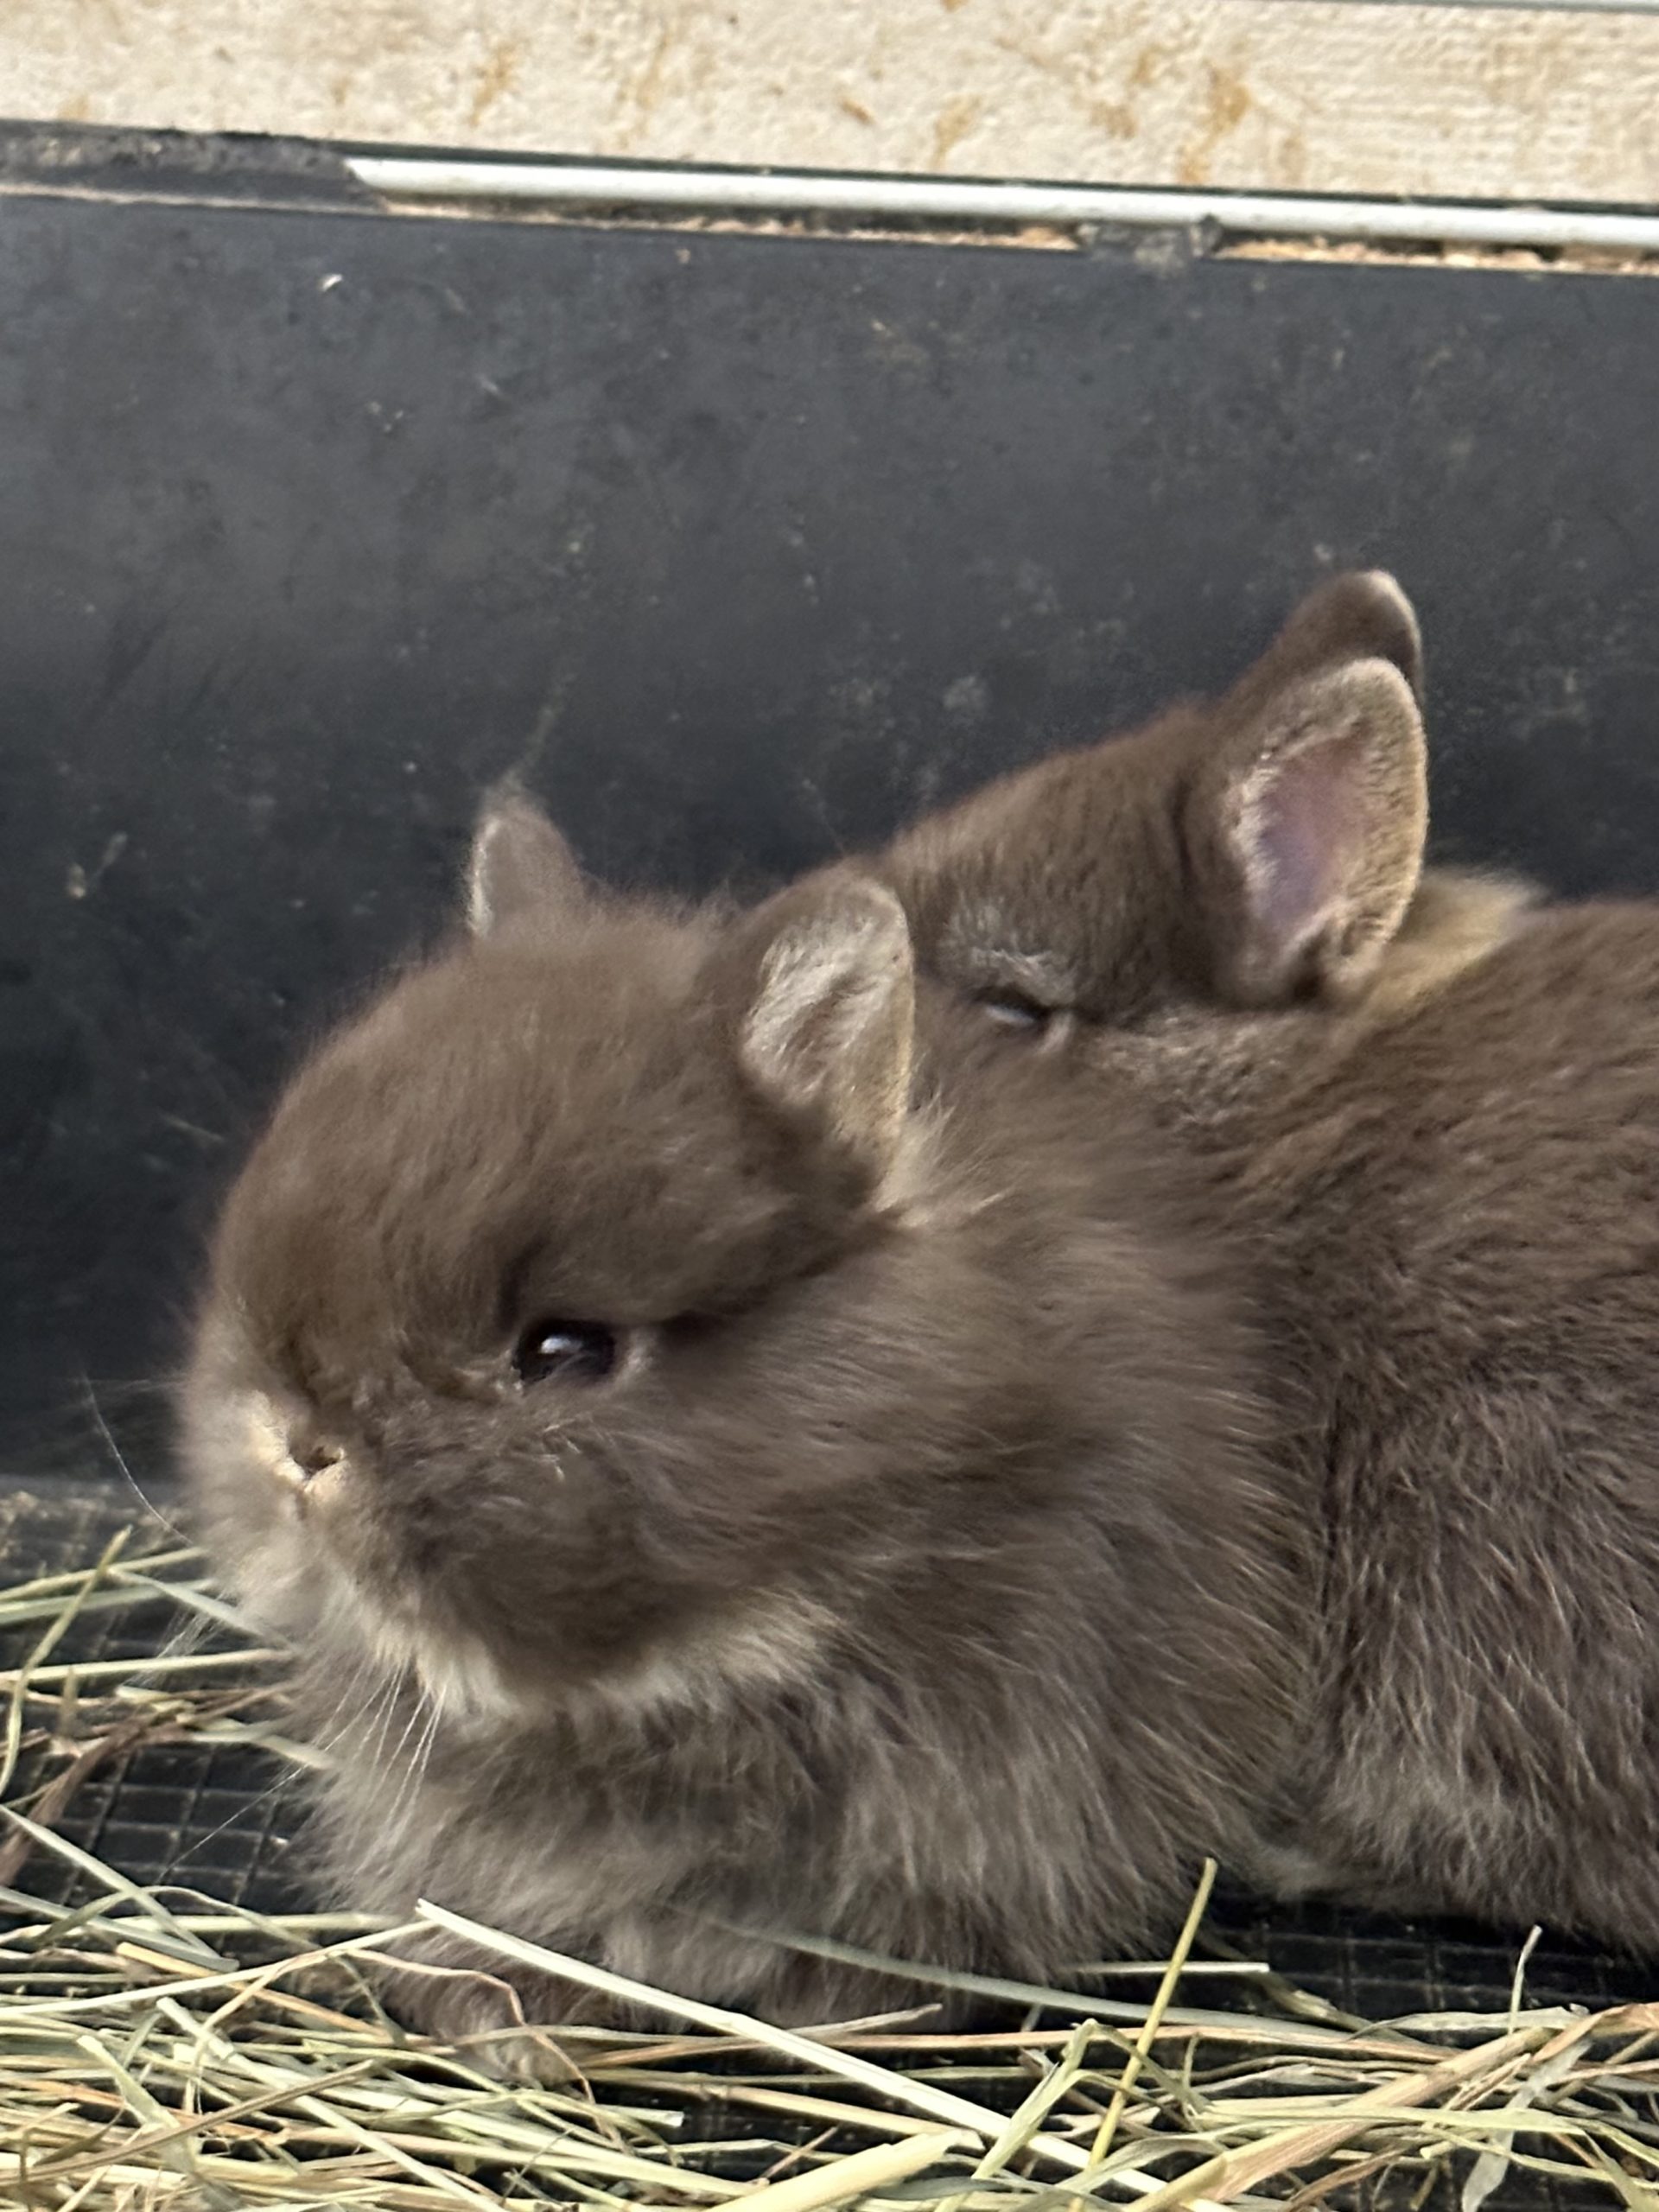 Éleveur amateur et passionné propose de magnifiques lapins nains de race bien typés, tous nés à l’élevage.